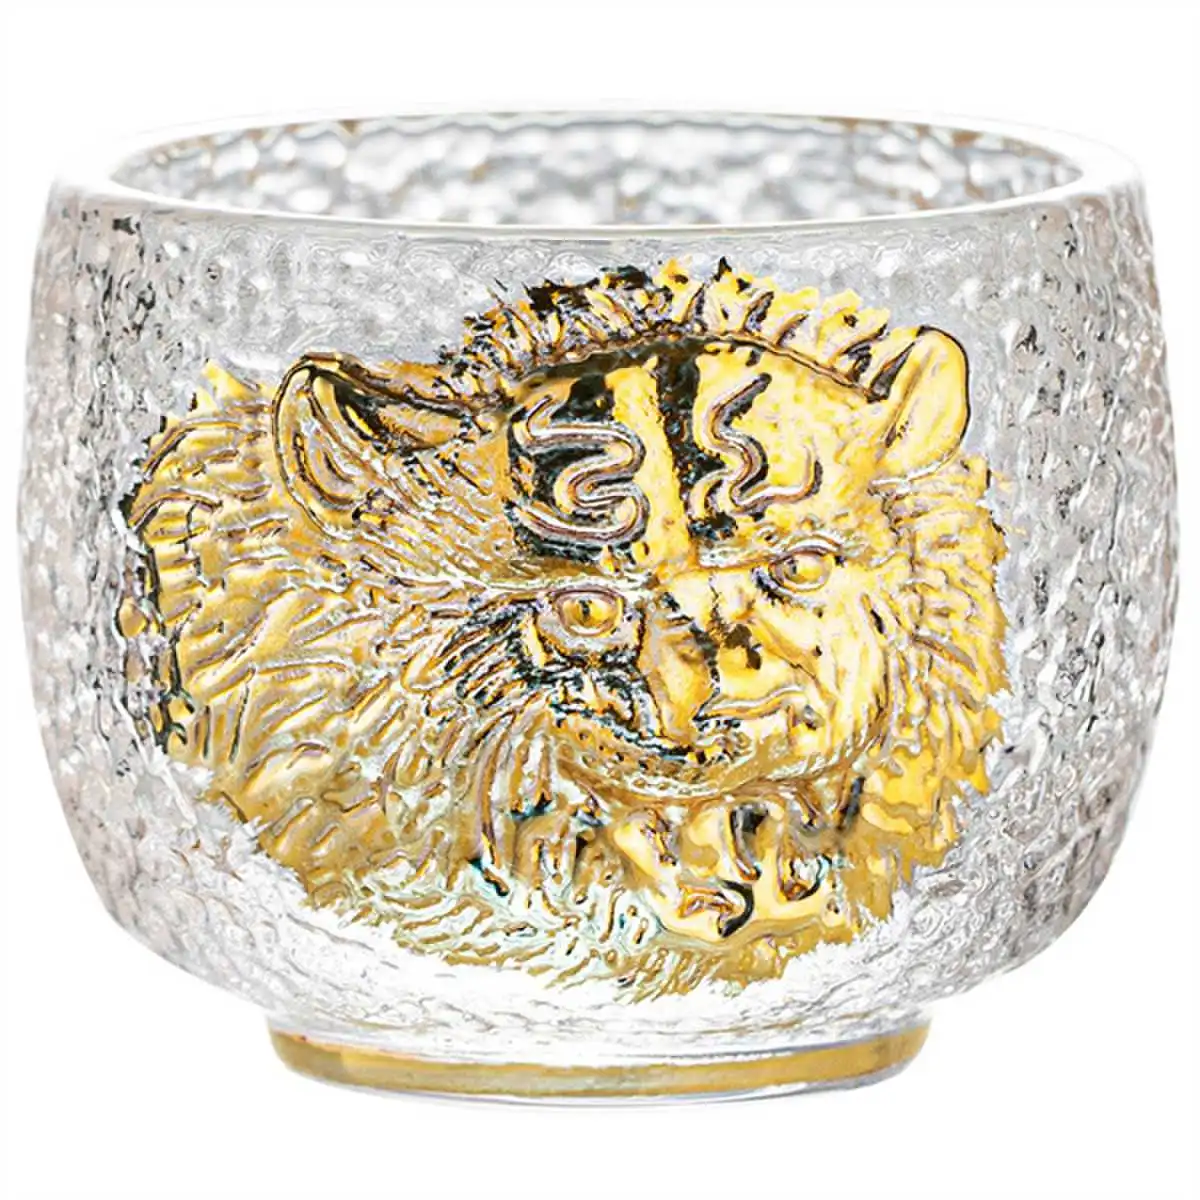 Čajna skodelica iz kristalnega stekla tigrove glave